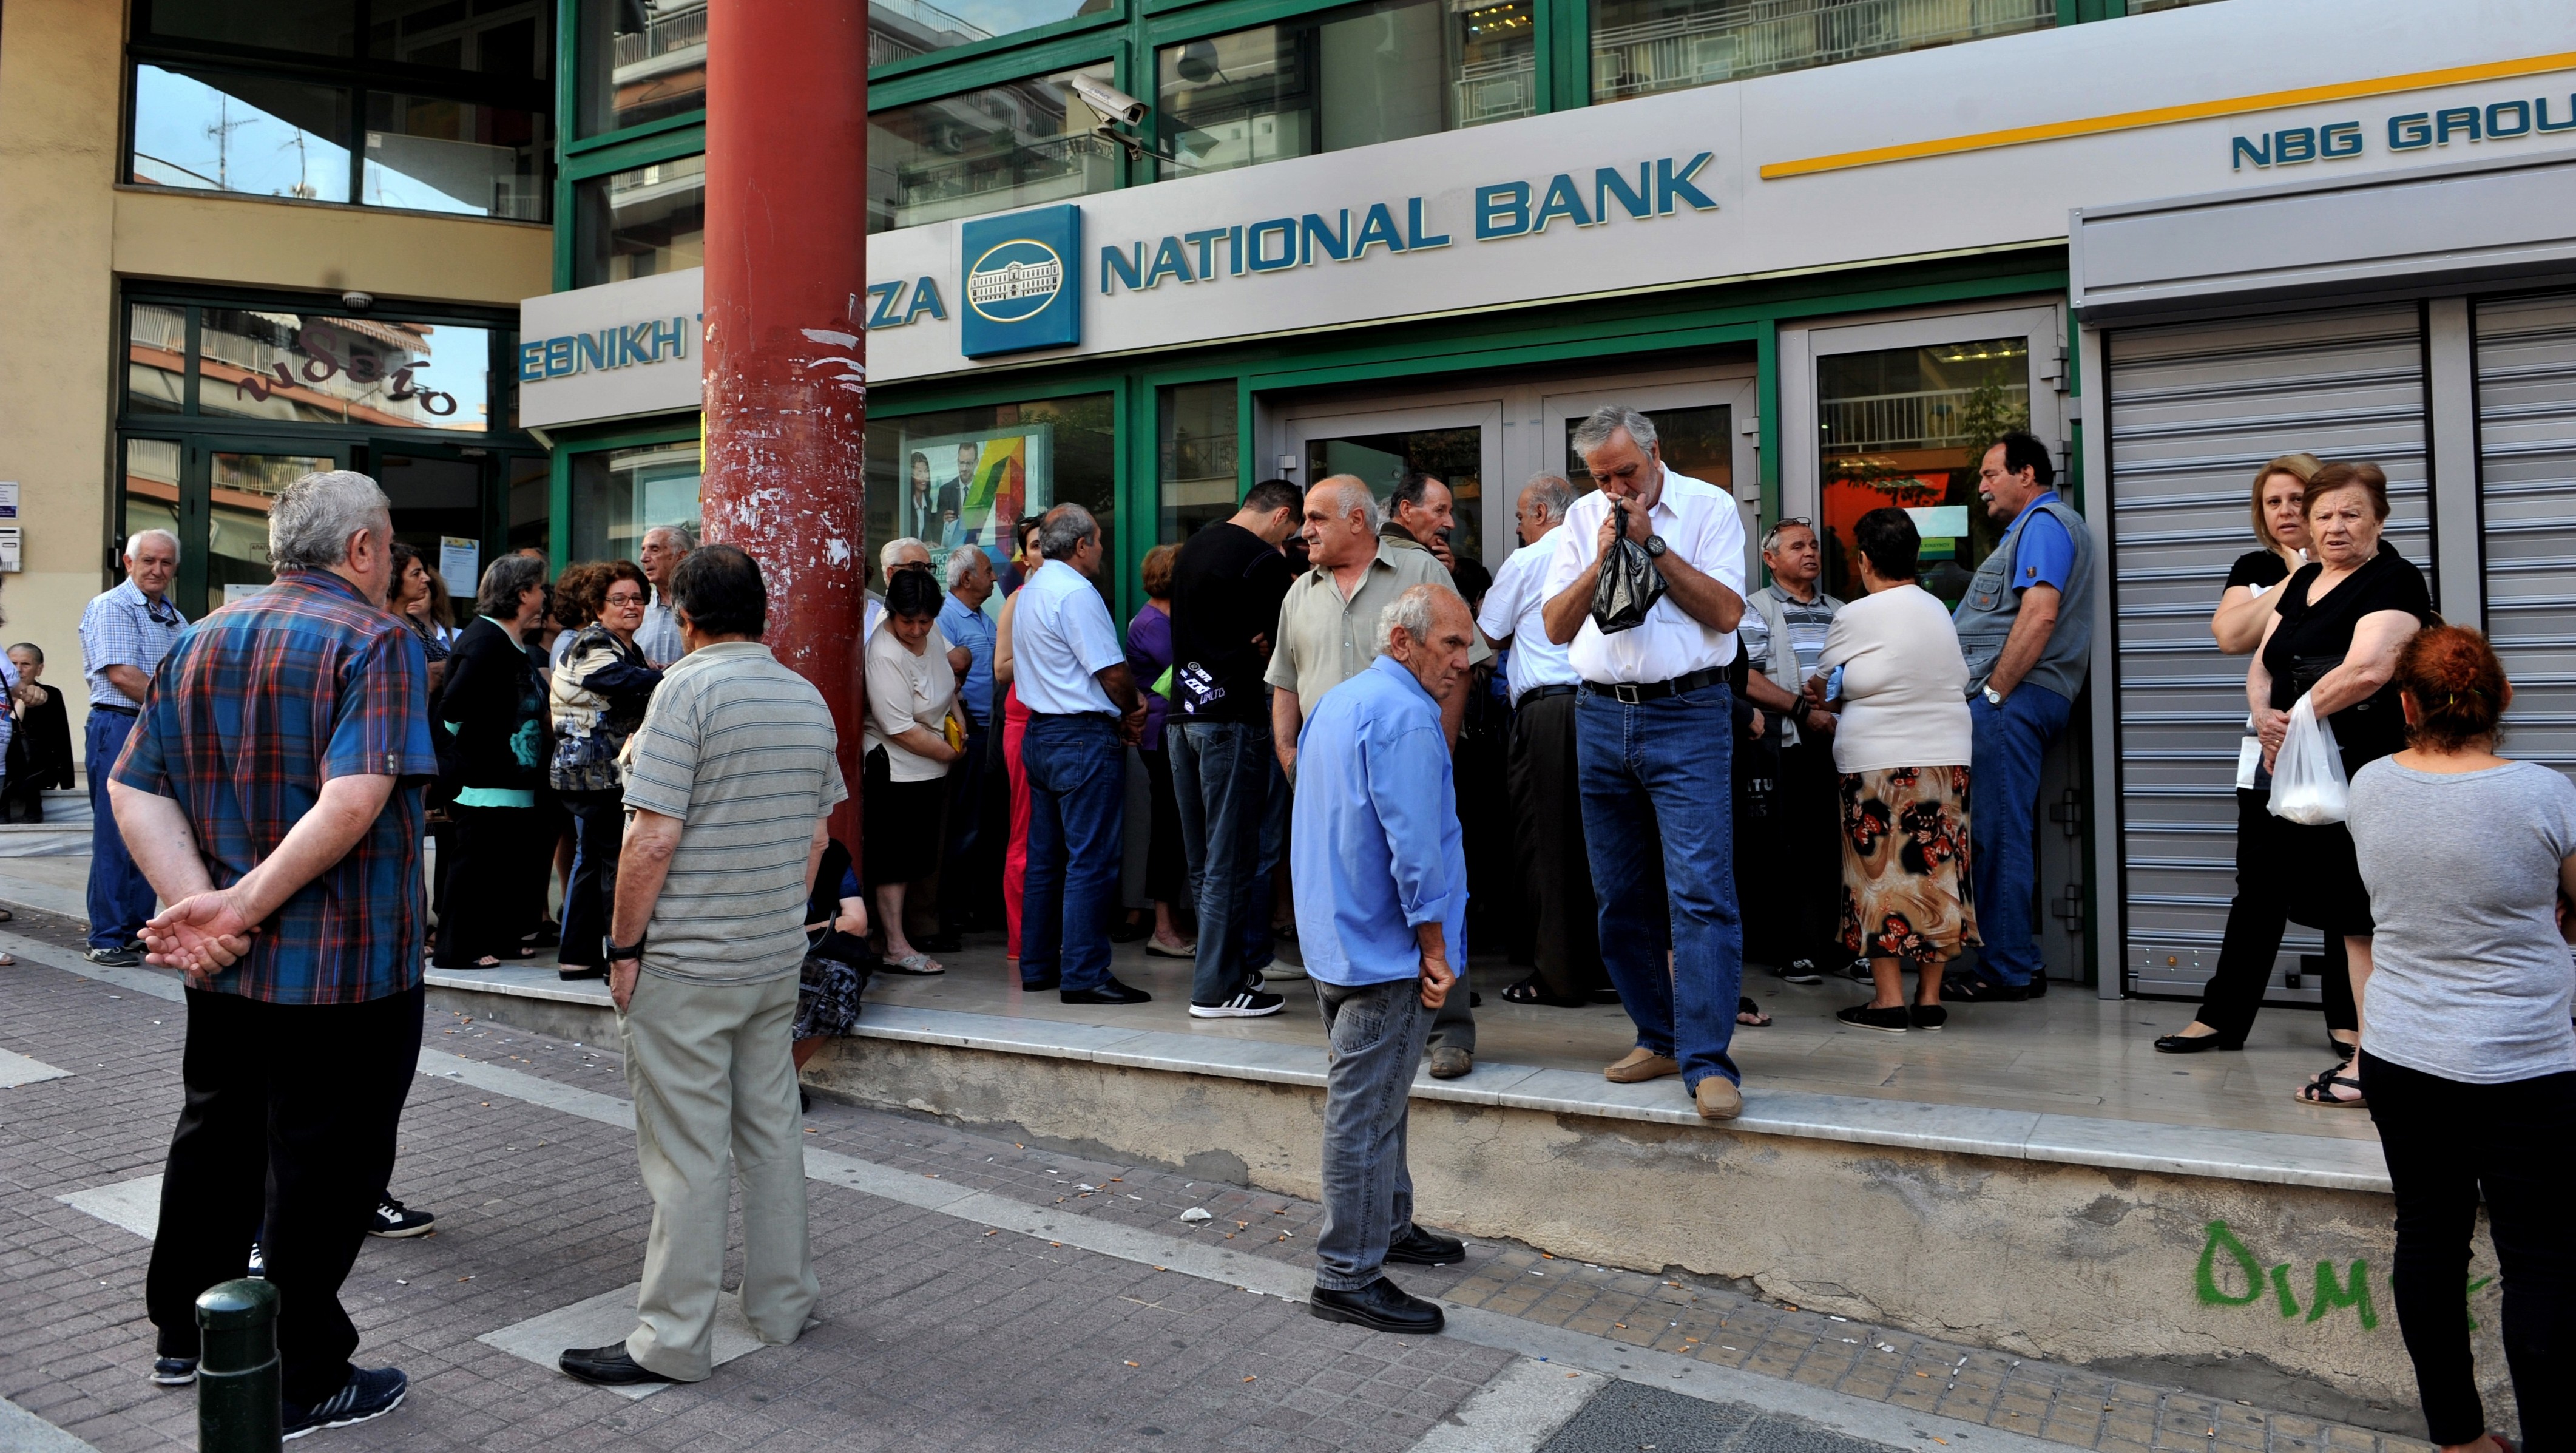  Crisis económica en Grecia: Corralito y cierre de bancos